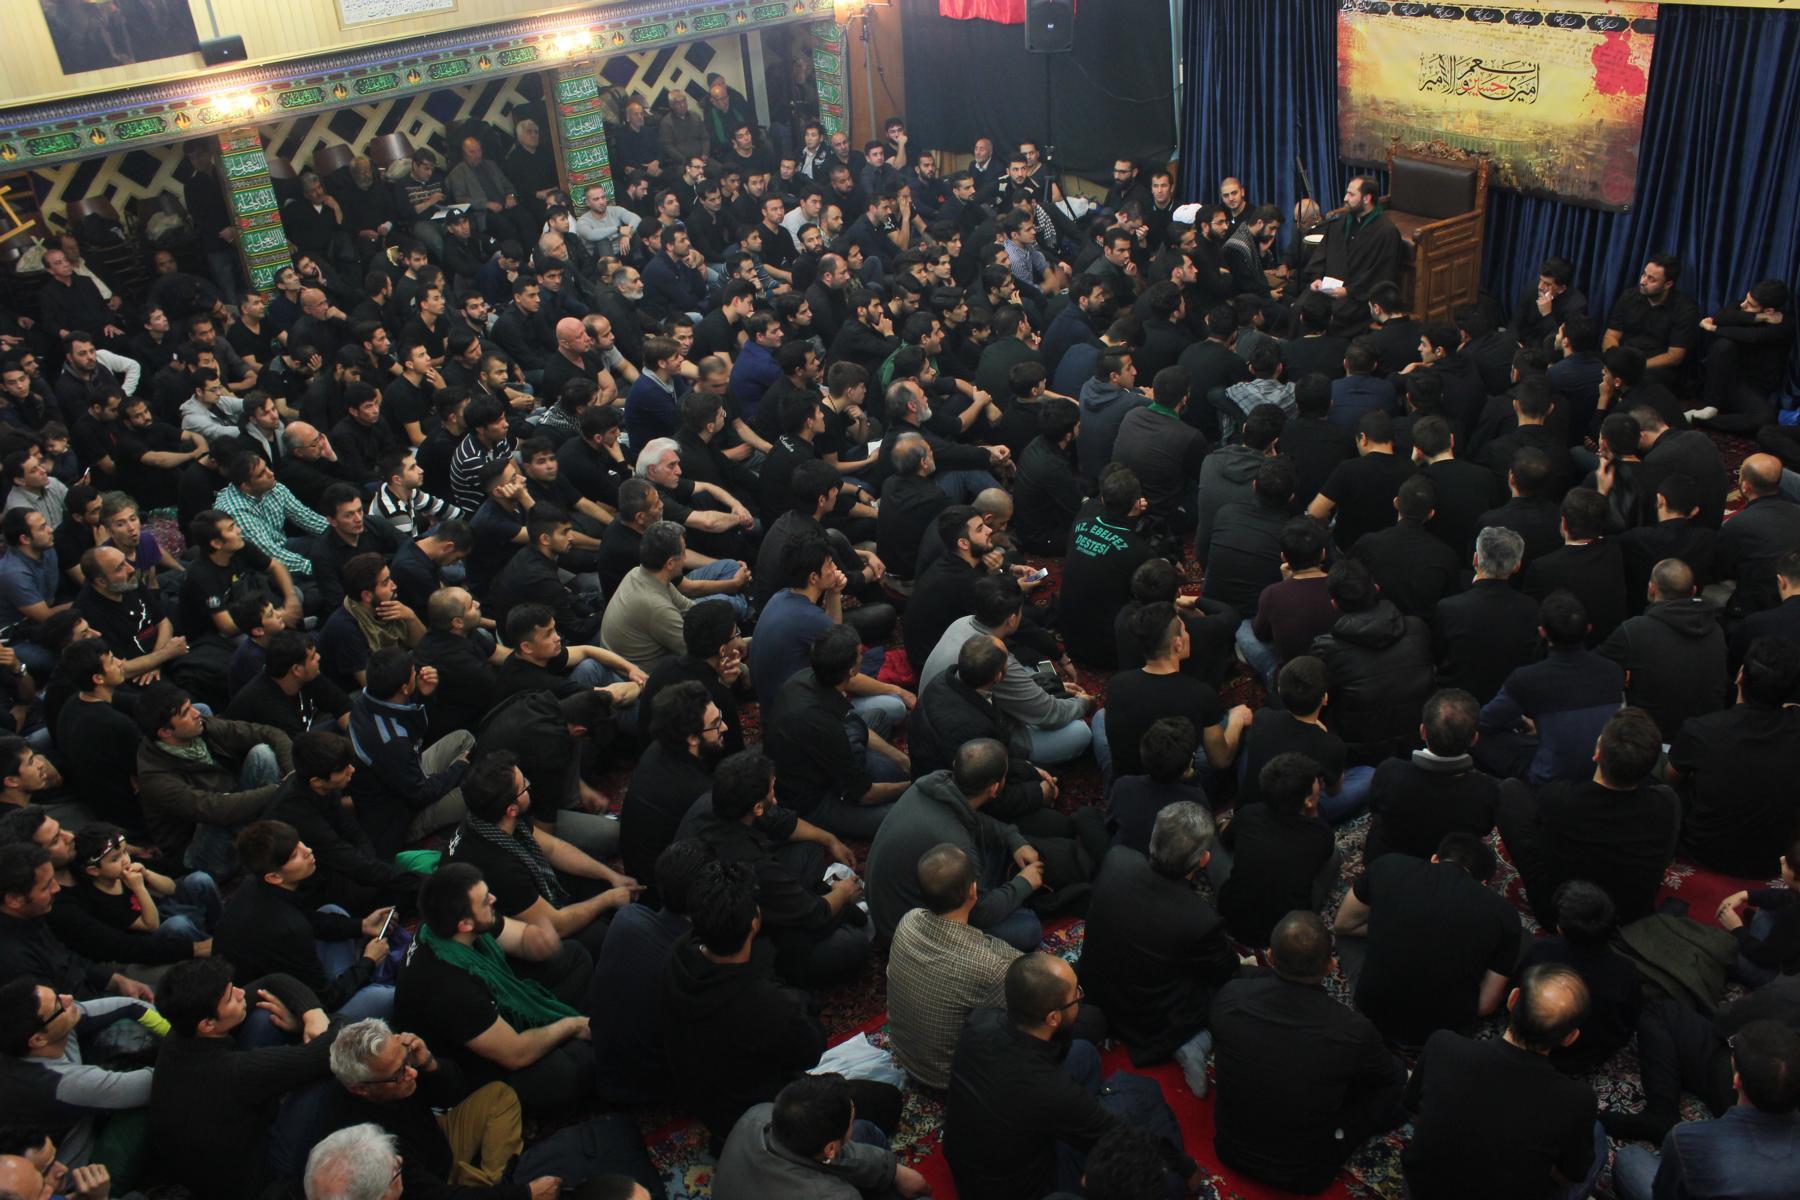  مراسم عزاداری دهه اول محرم در مسجد امام علی هامبورگ